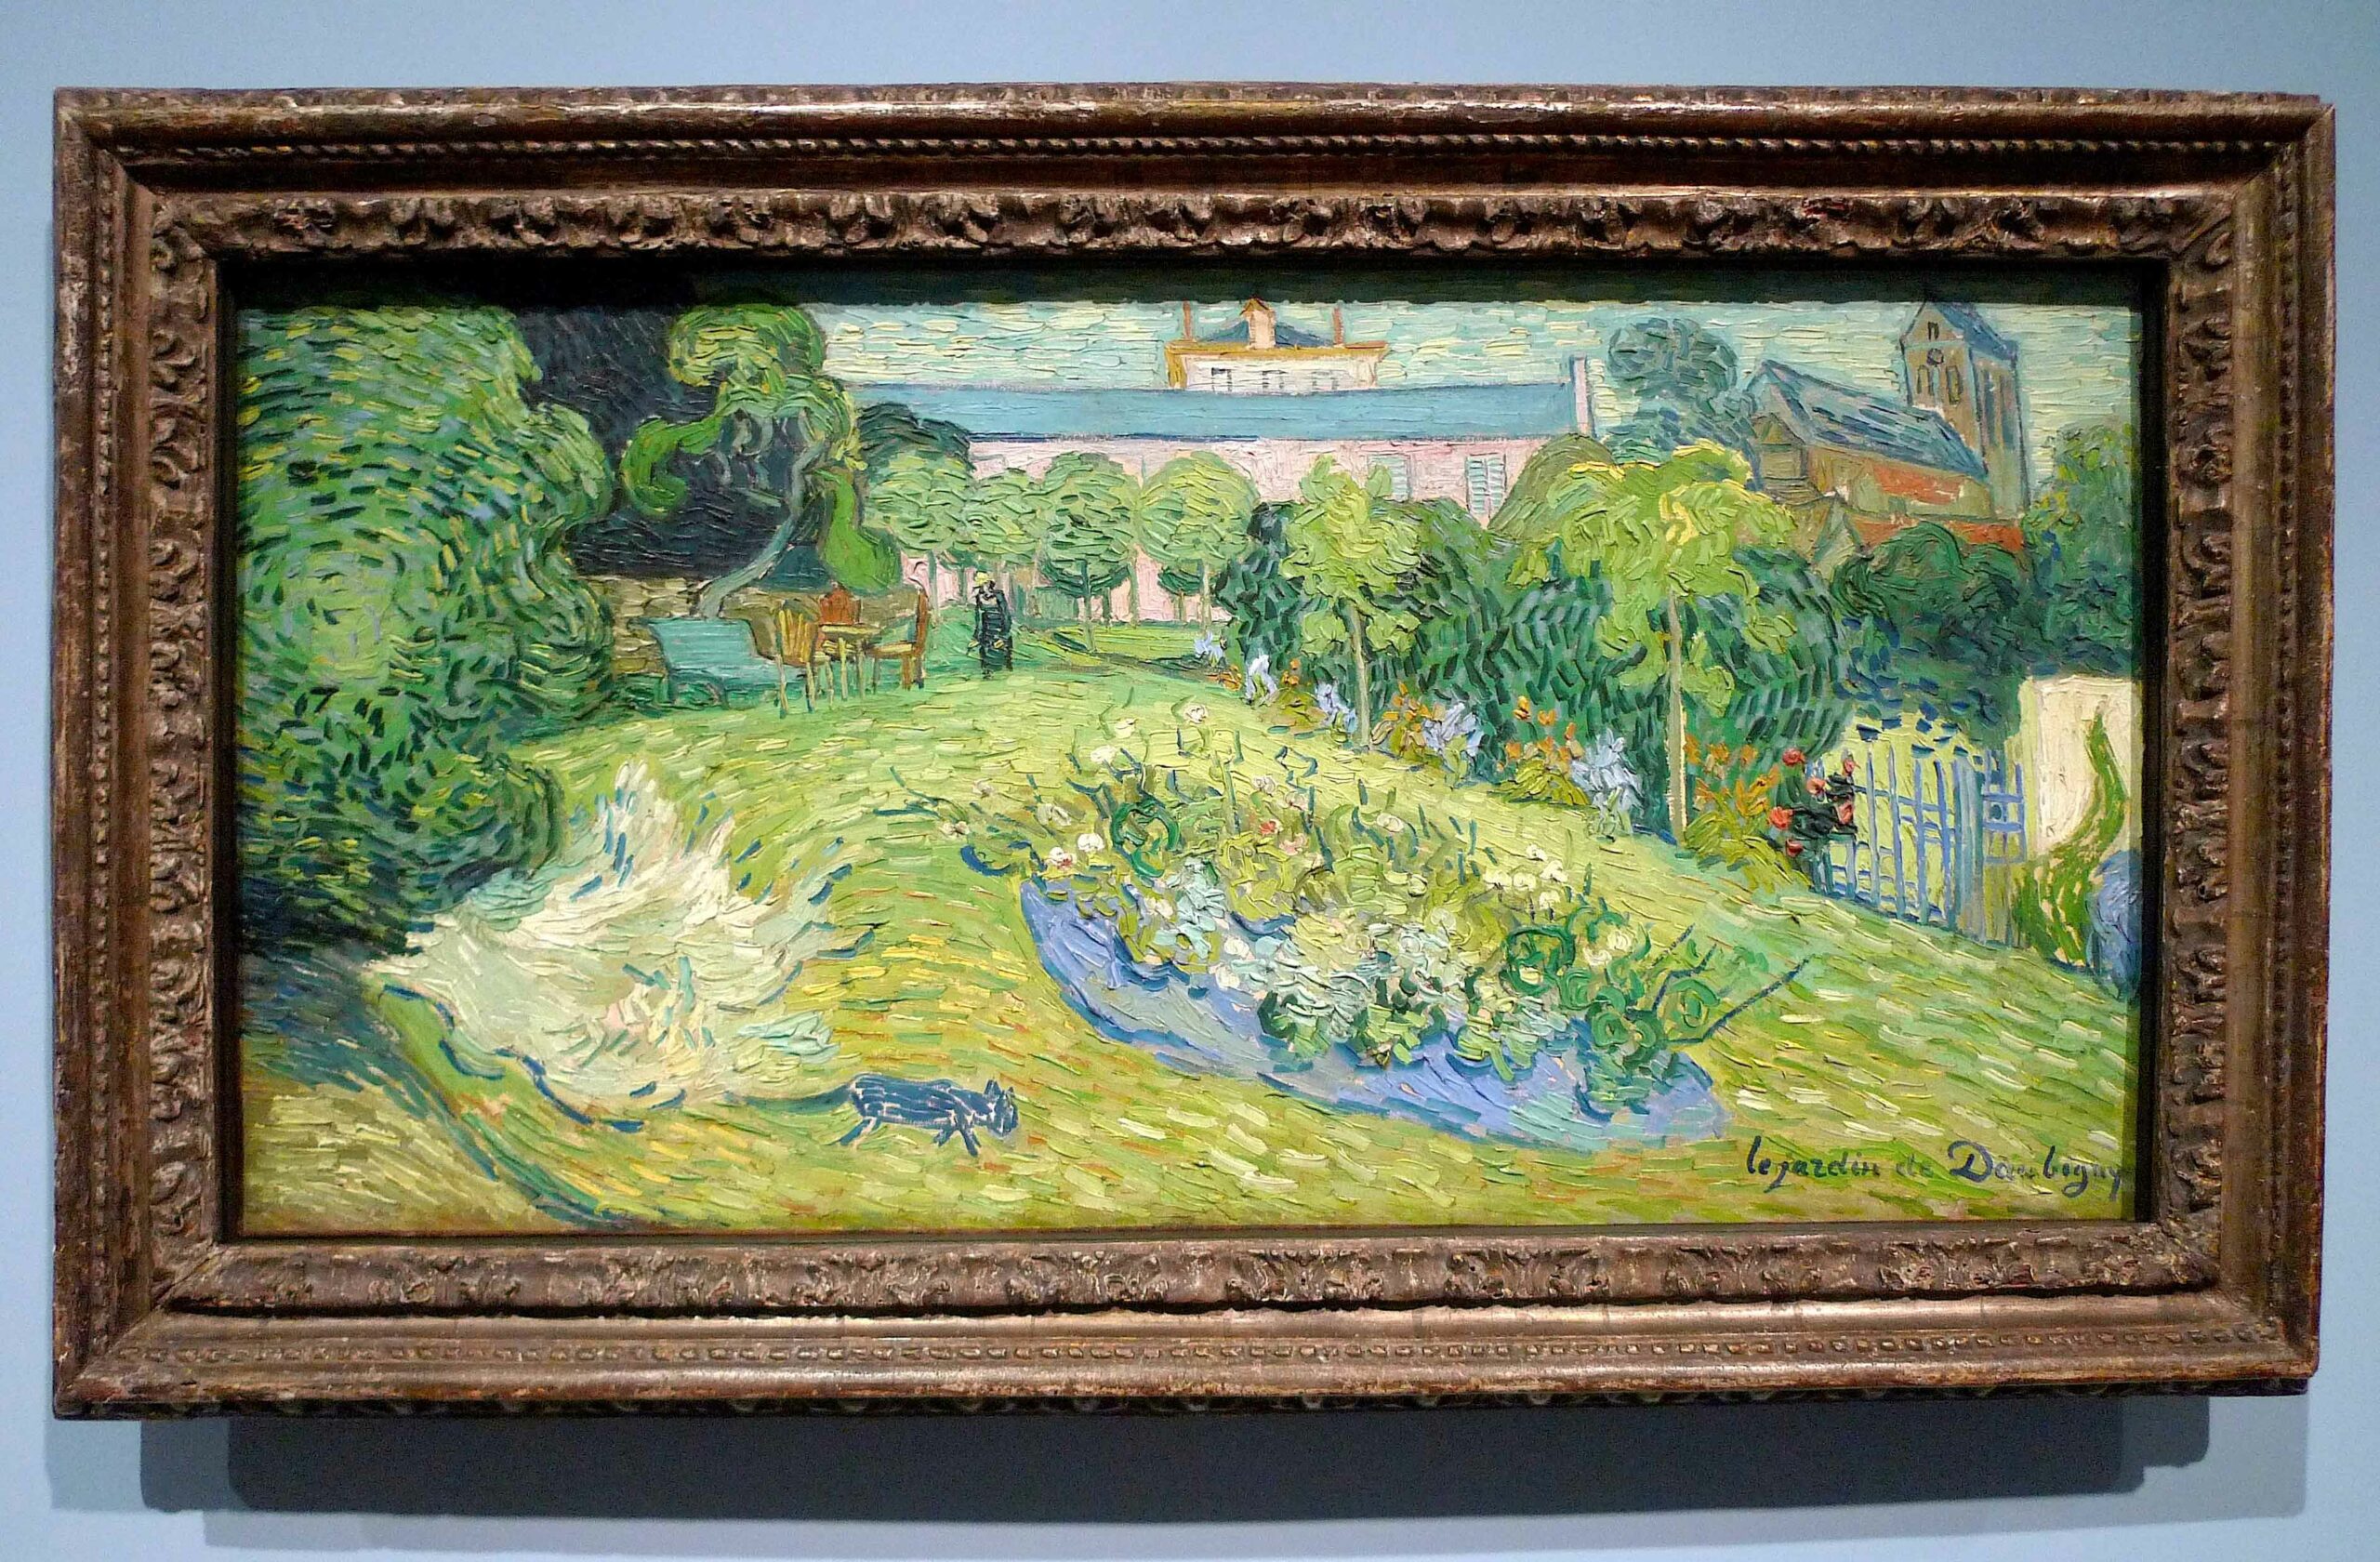 Arts & Antiques Range Van Gogh 2019 Square Wall Calendar 